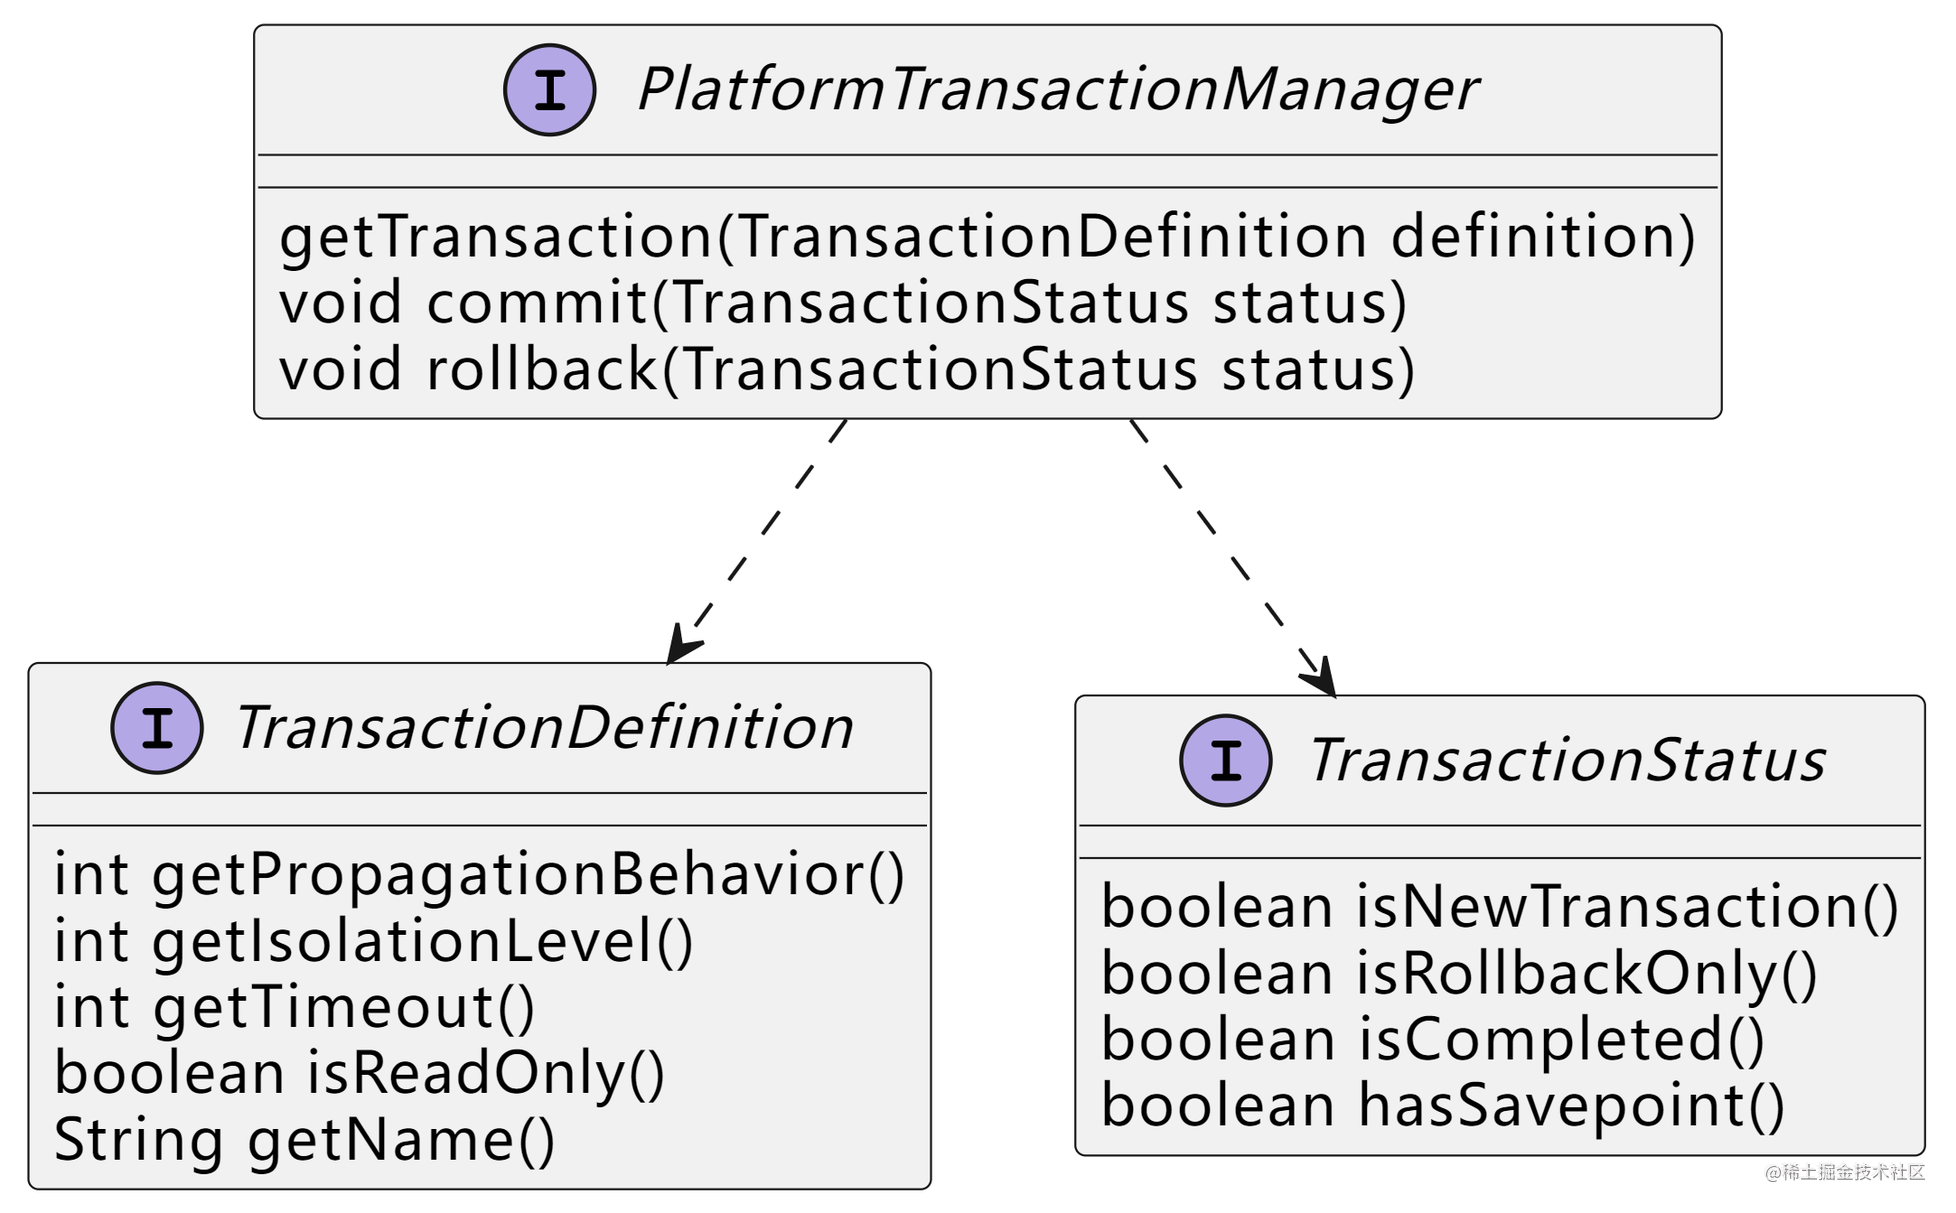 platform_transaction_manager_uml.png